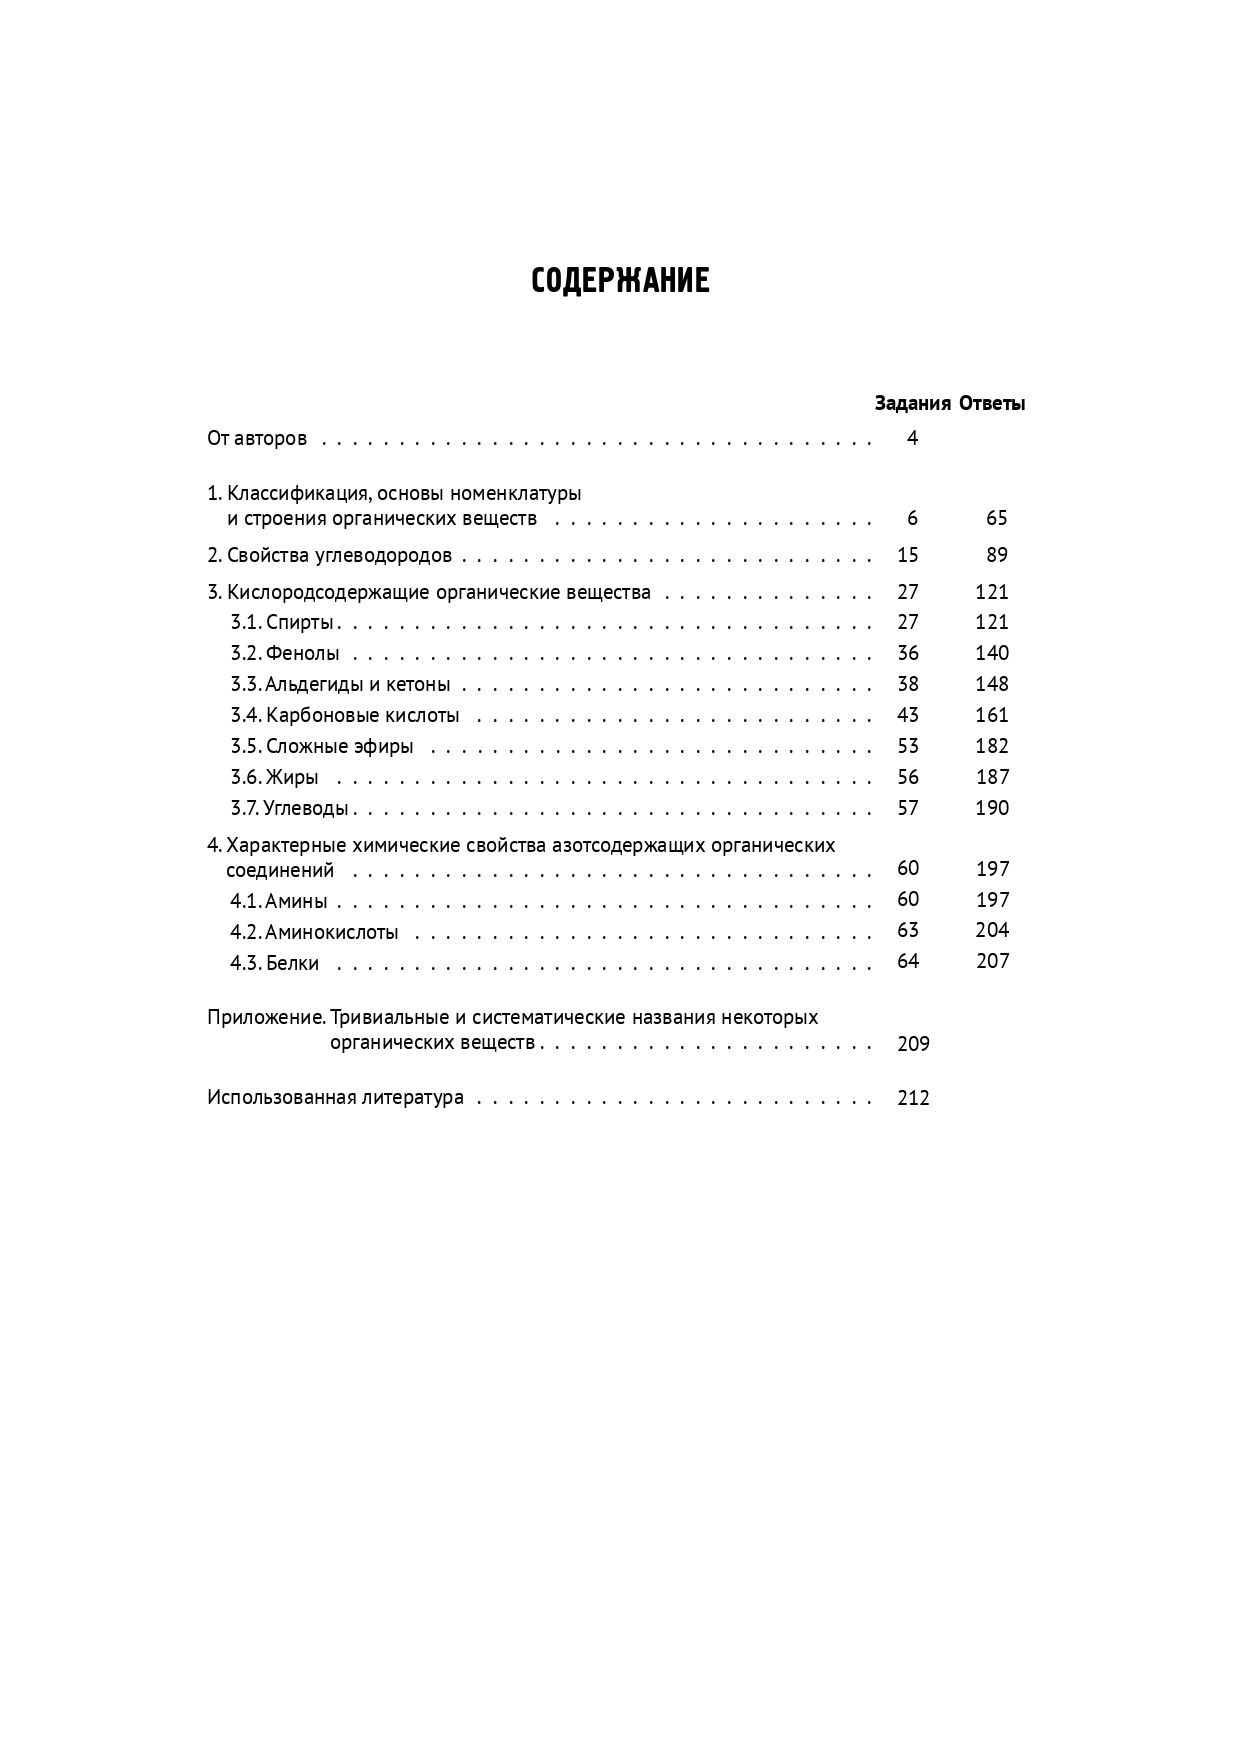 Химия. ЕГЭ. 10–11-е классы. Раздел «Органическая химия». Задания и решения. Изд. 7-е, доп.